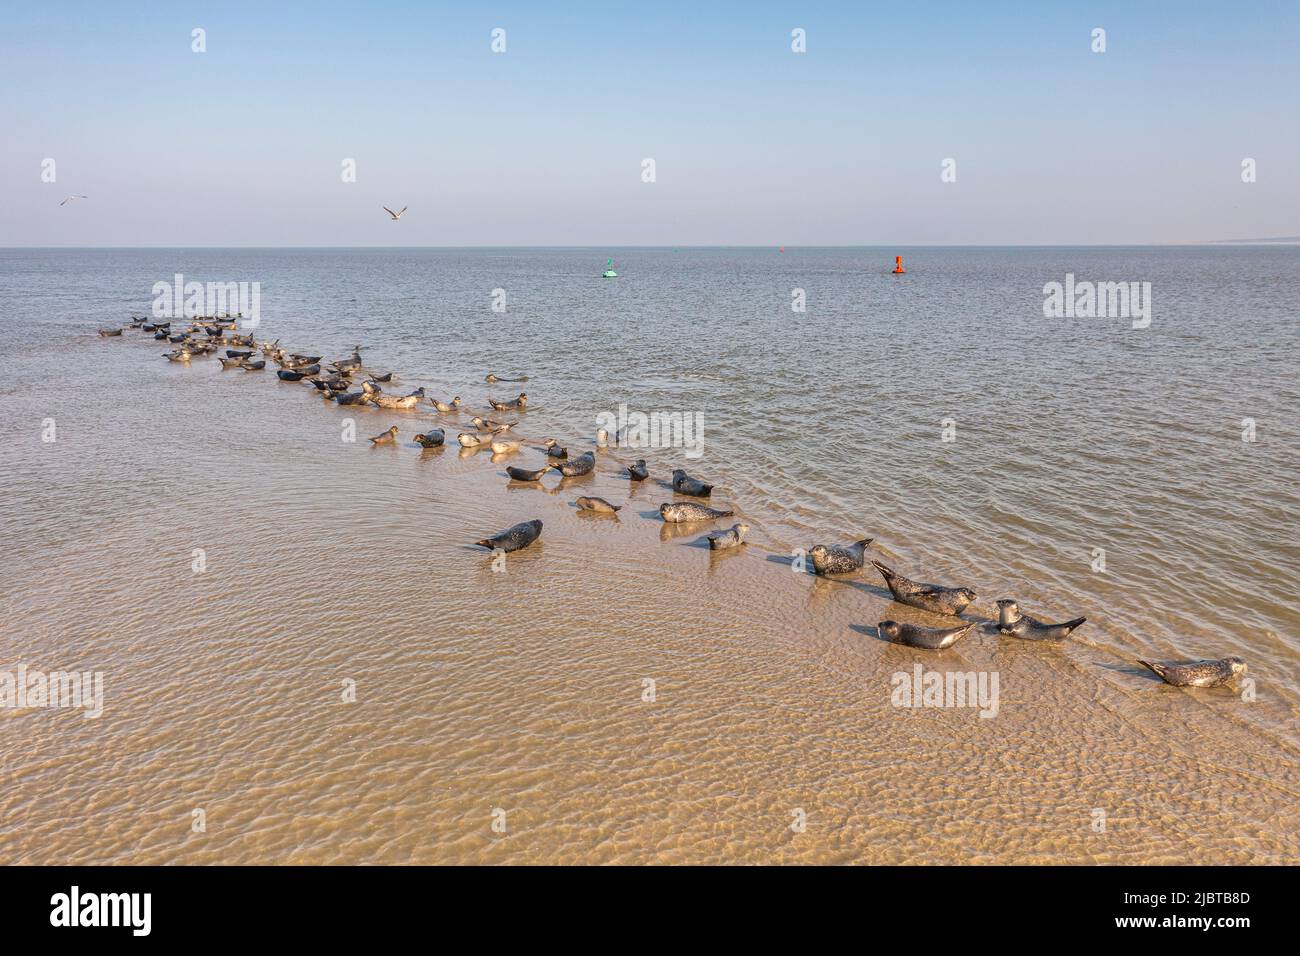 Frankreich, Somme, Le Hourdel, während die Flut ausgeht, kommen Robben auf den Sandbänken zur Ruhe (Luftaufnahme) Stockfoto